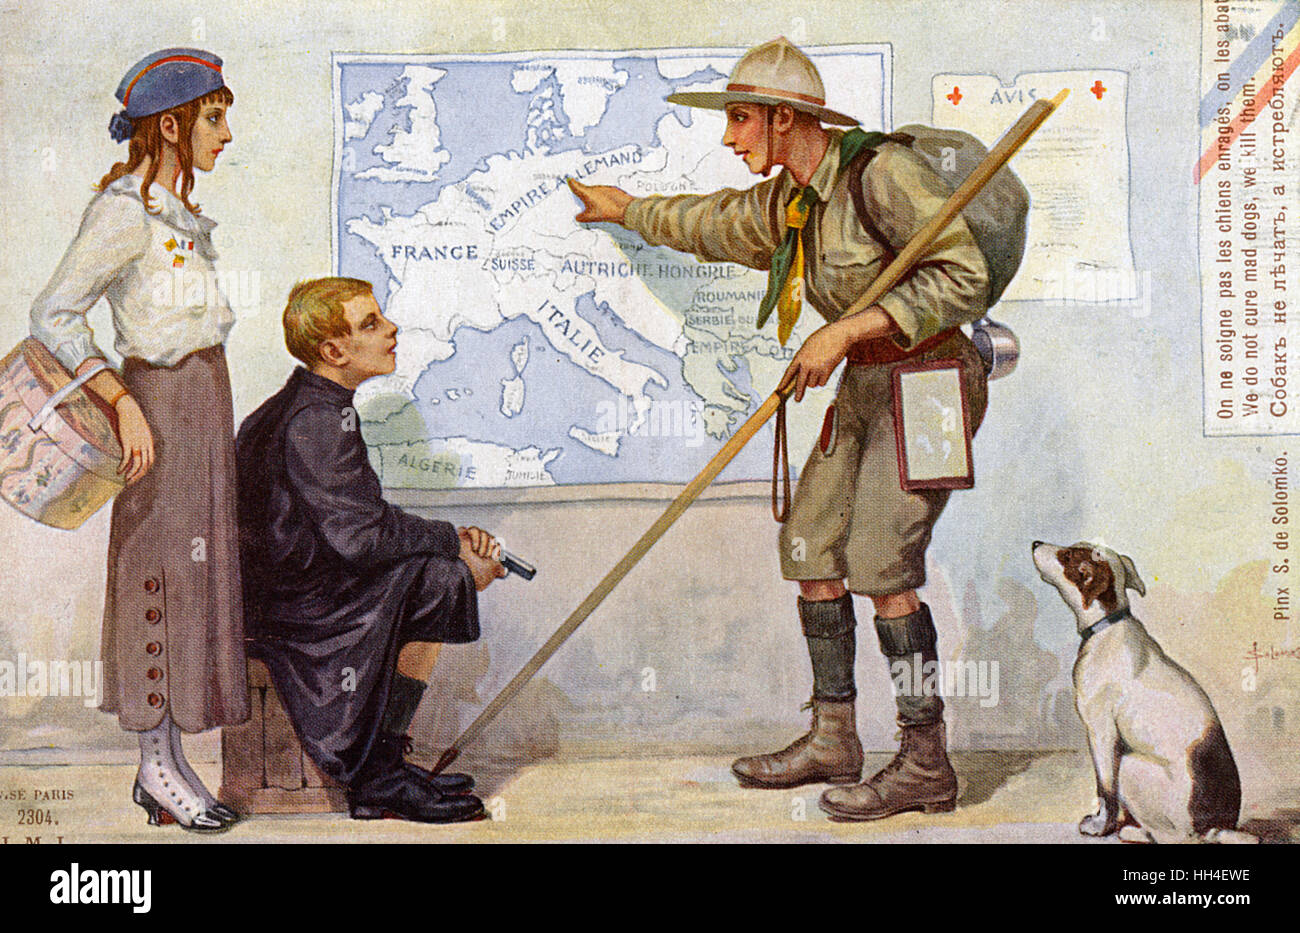 WW1 - noi non guariamo i cani pazzi, li uccidiamo - Solomko Foto Stock